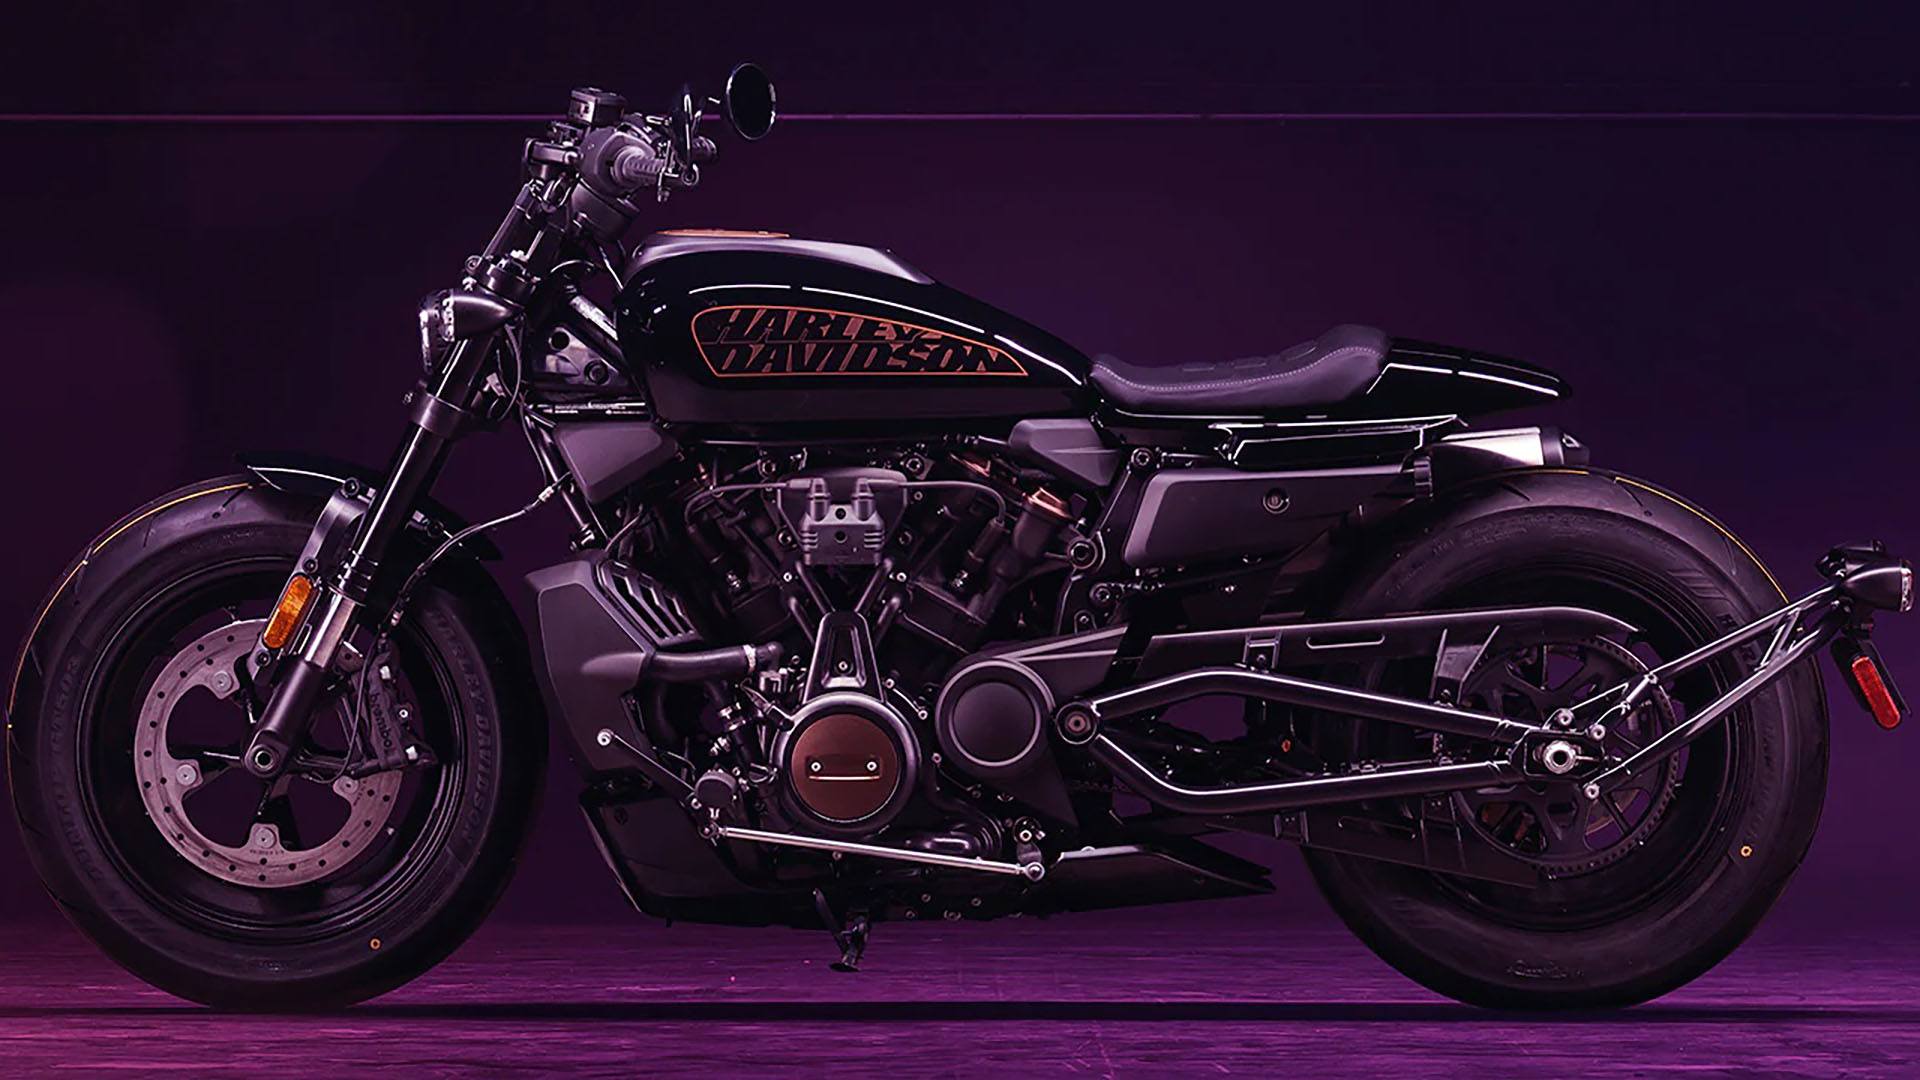 2022 Harley-Davidson Sportster® S in Pasadena, Texas - Photo 3